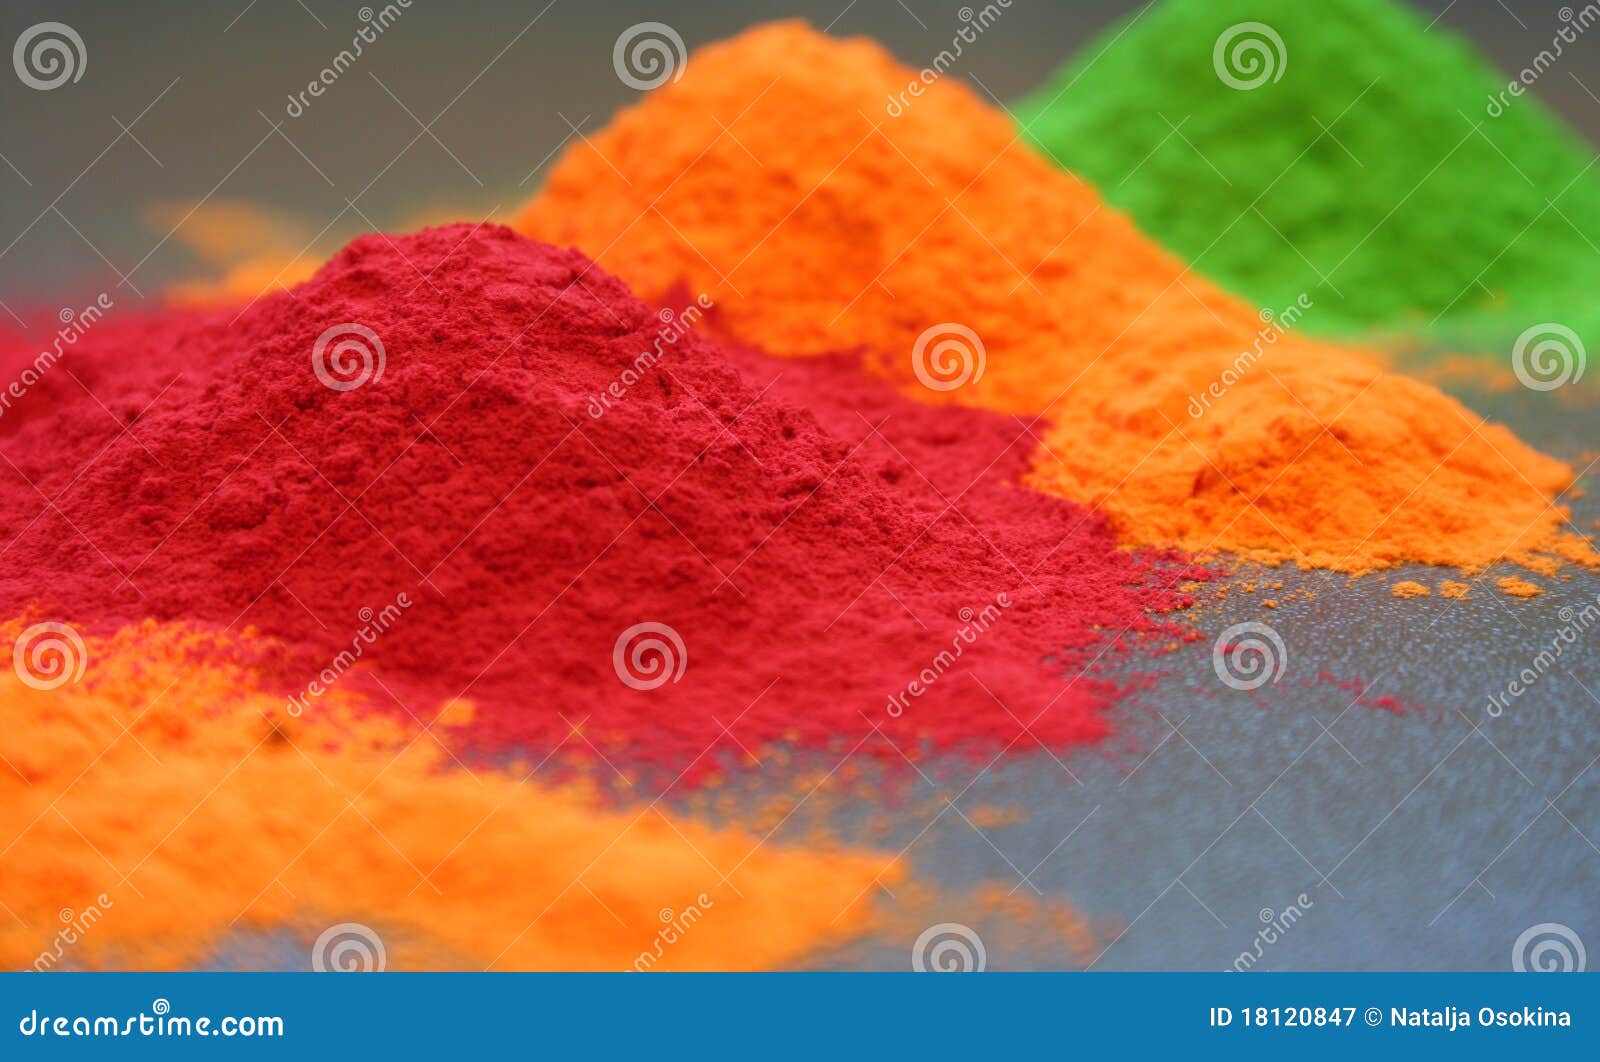 colored powder